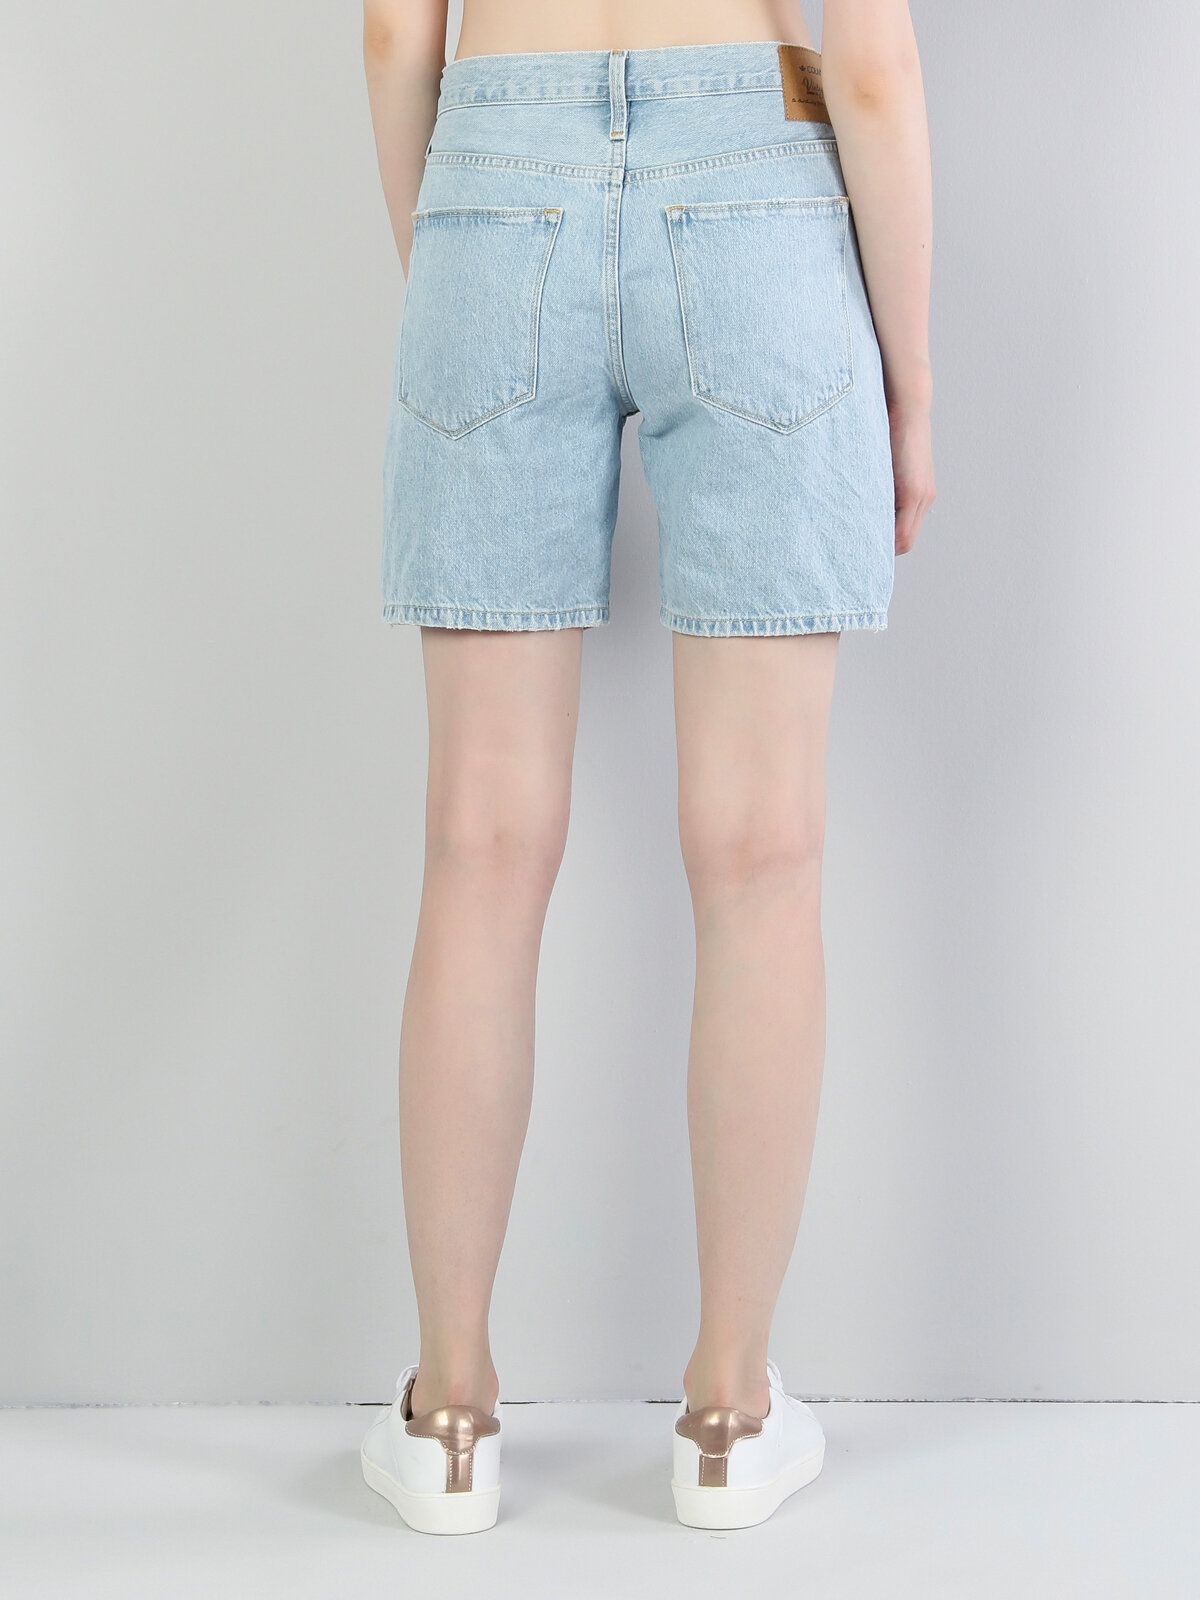 Afișați detalii pentru Albastru Femei Short / Pantaloni Scurti Regular Fit